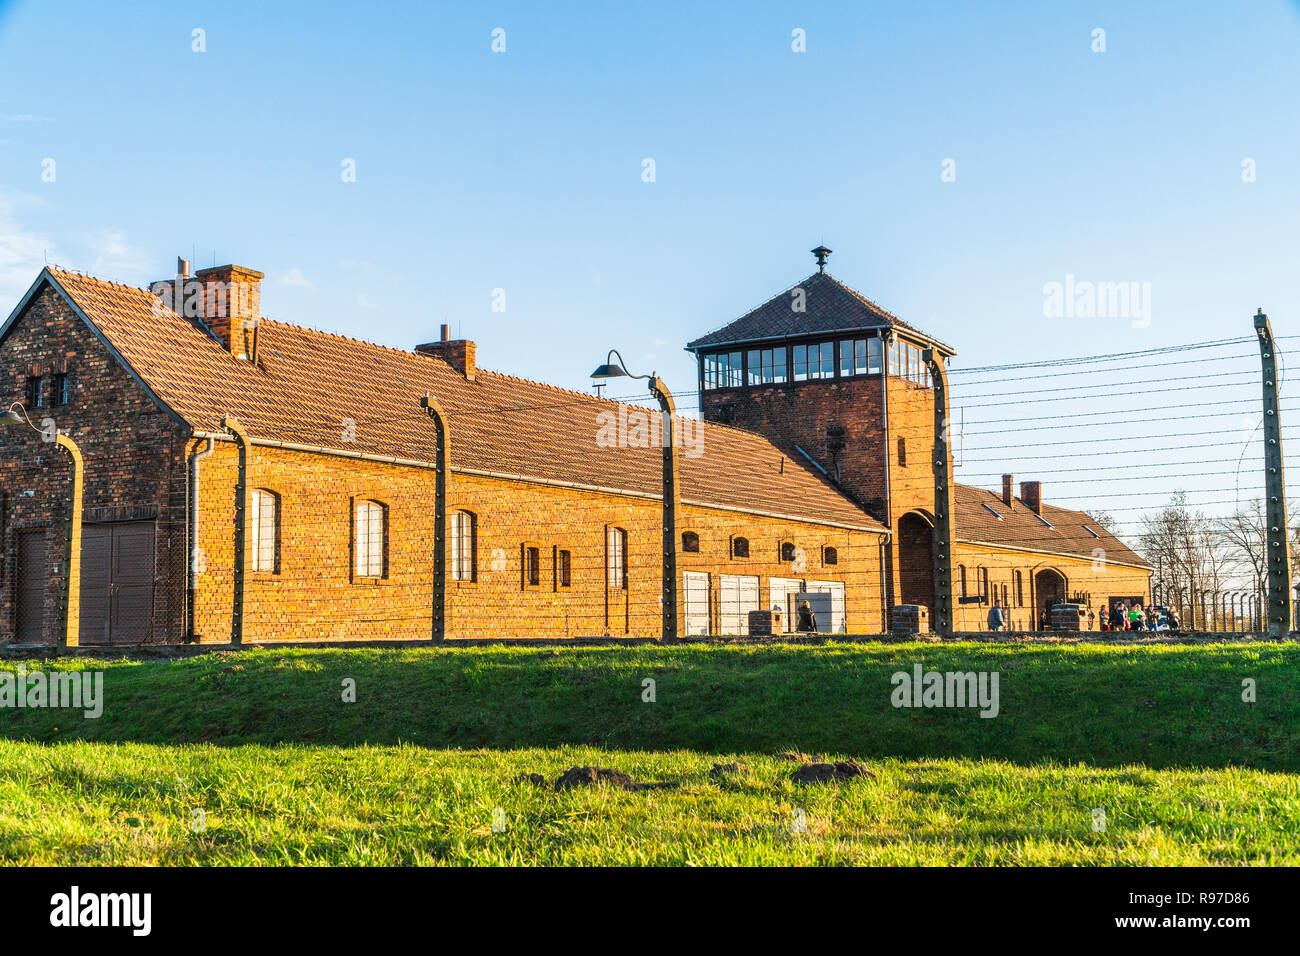 Bâtiment de l'entrée principale du camp de concentration d'Auschwitz Birkenau, musée de nos jours, Pologne Banque D'Images